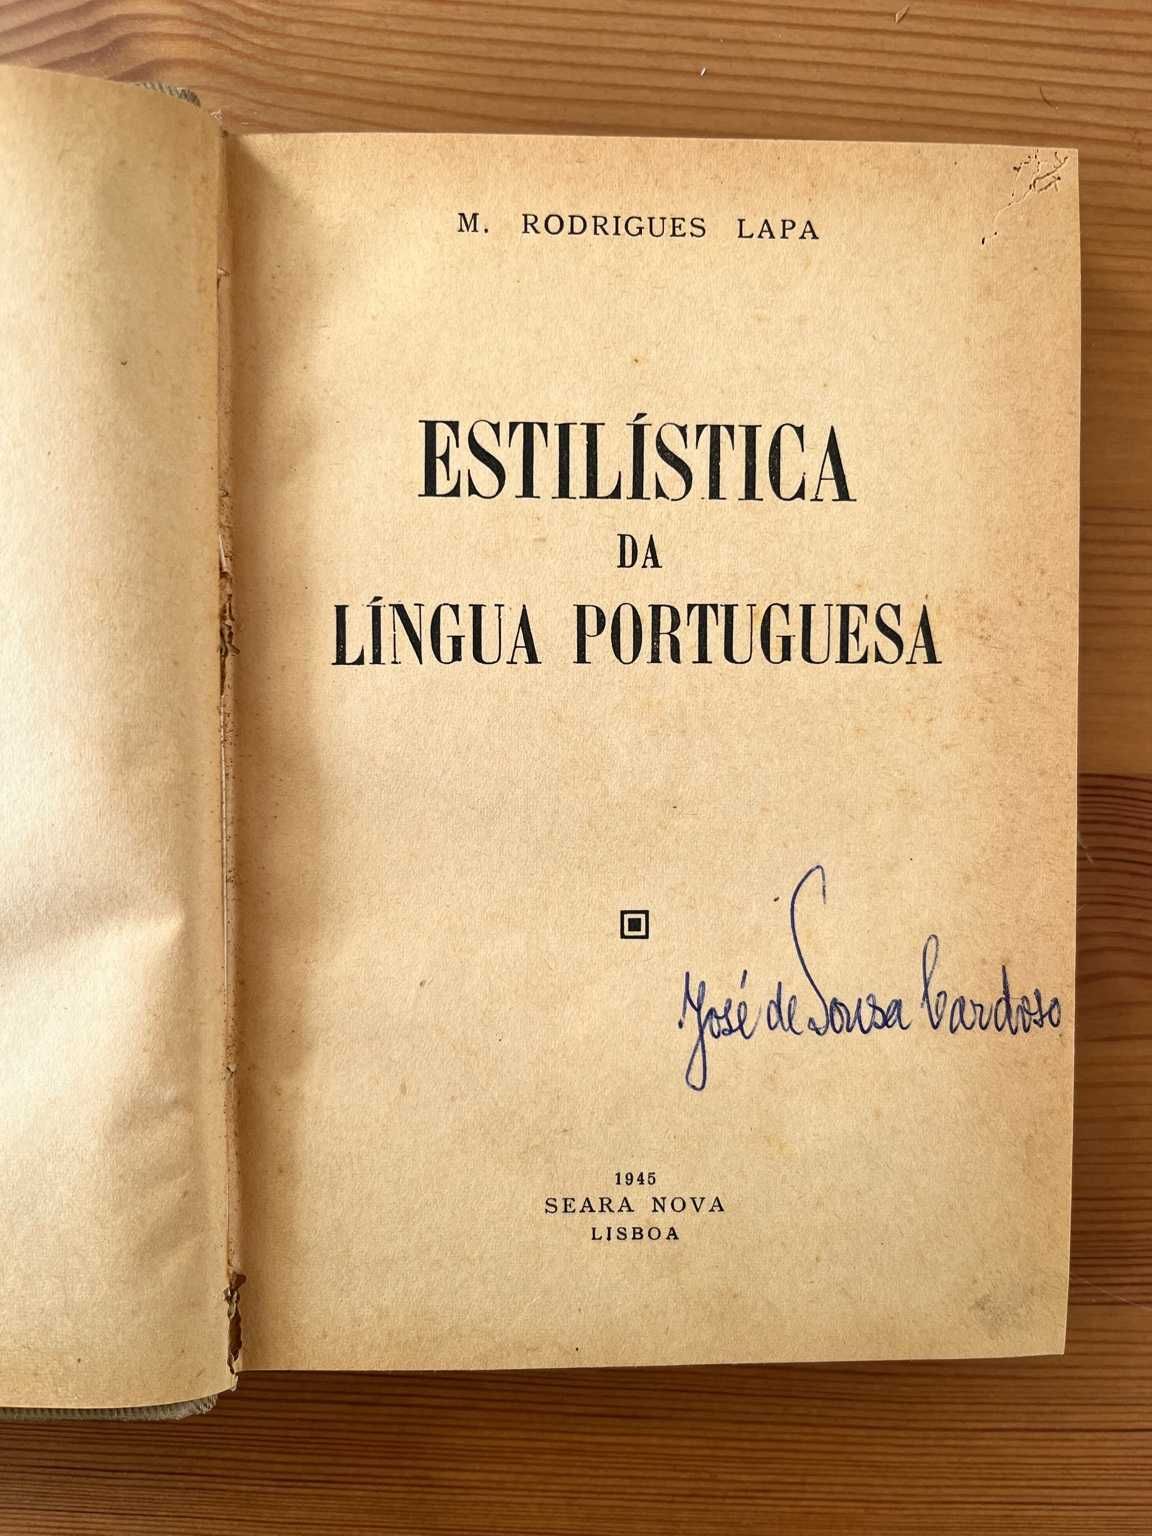 Estilística da Língua Portuguesa - M. Rodrigues Lapa - 1945